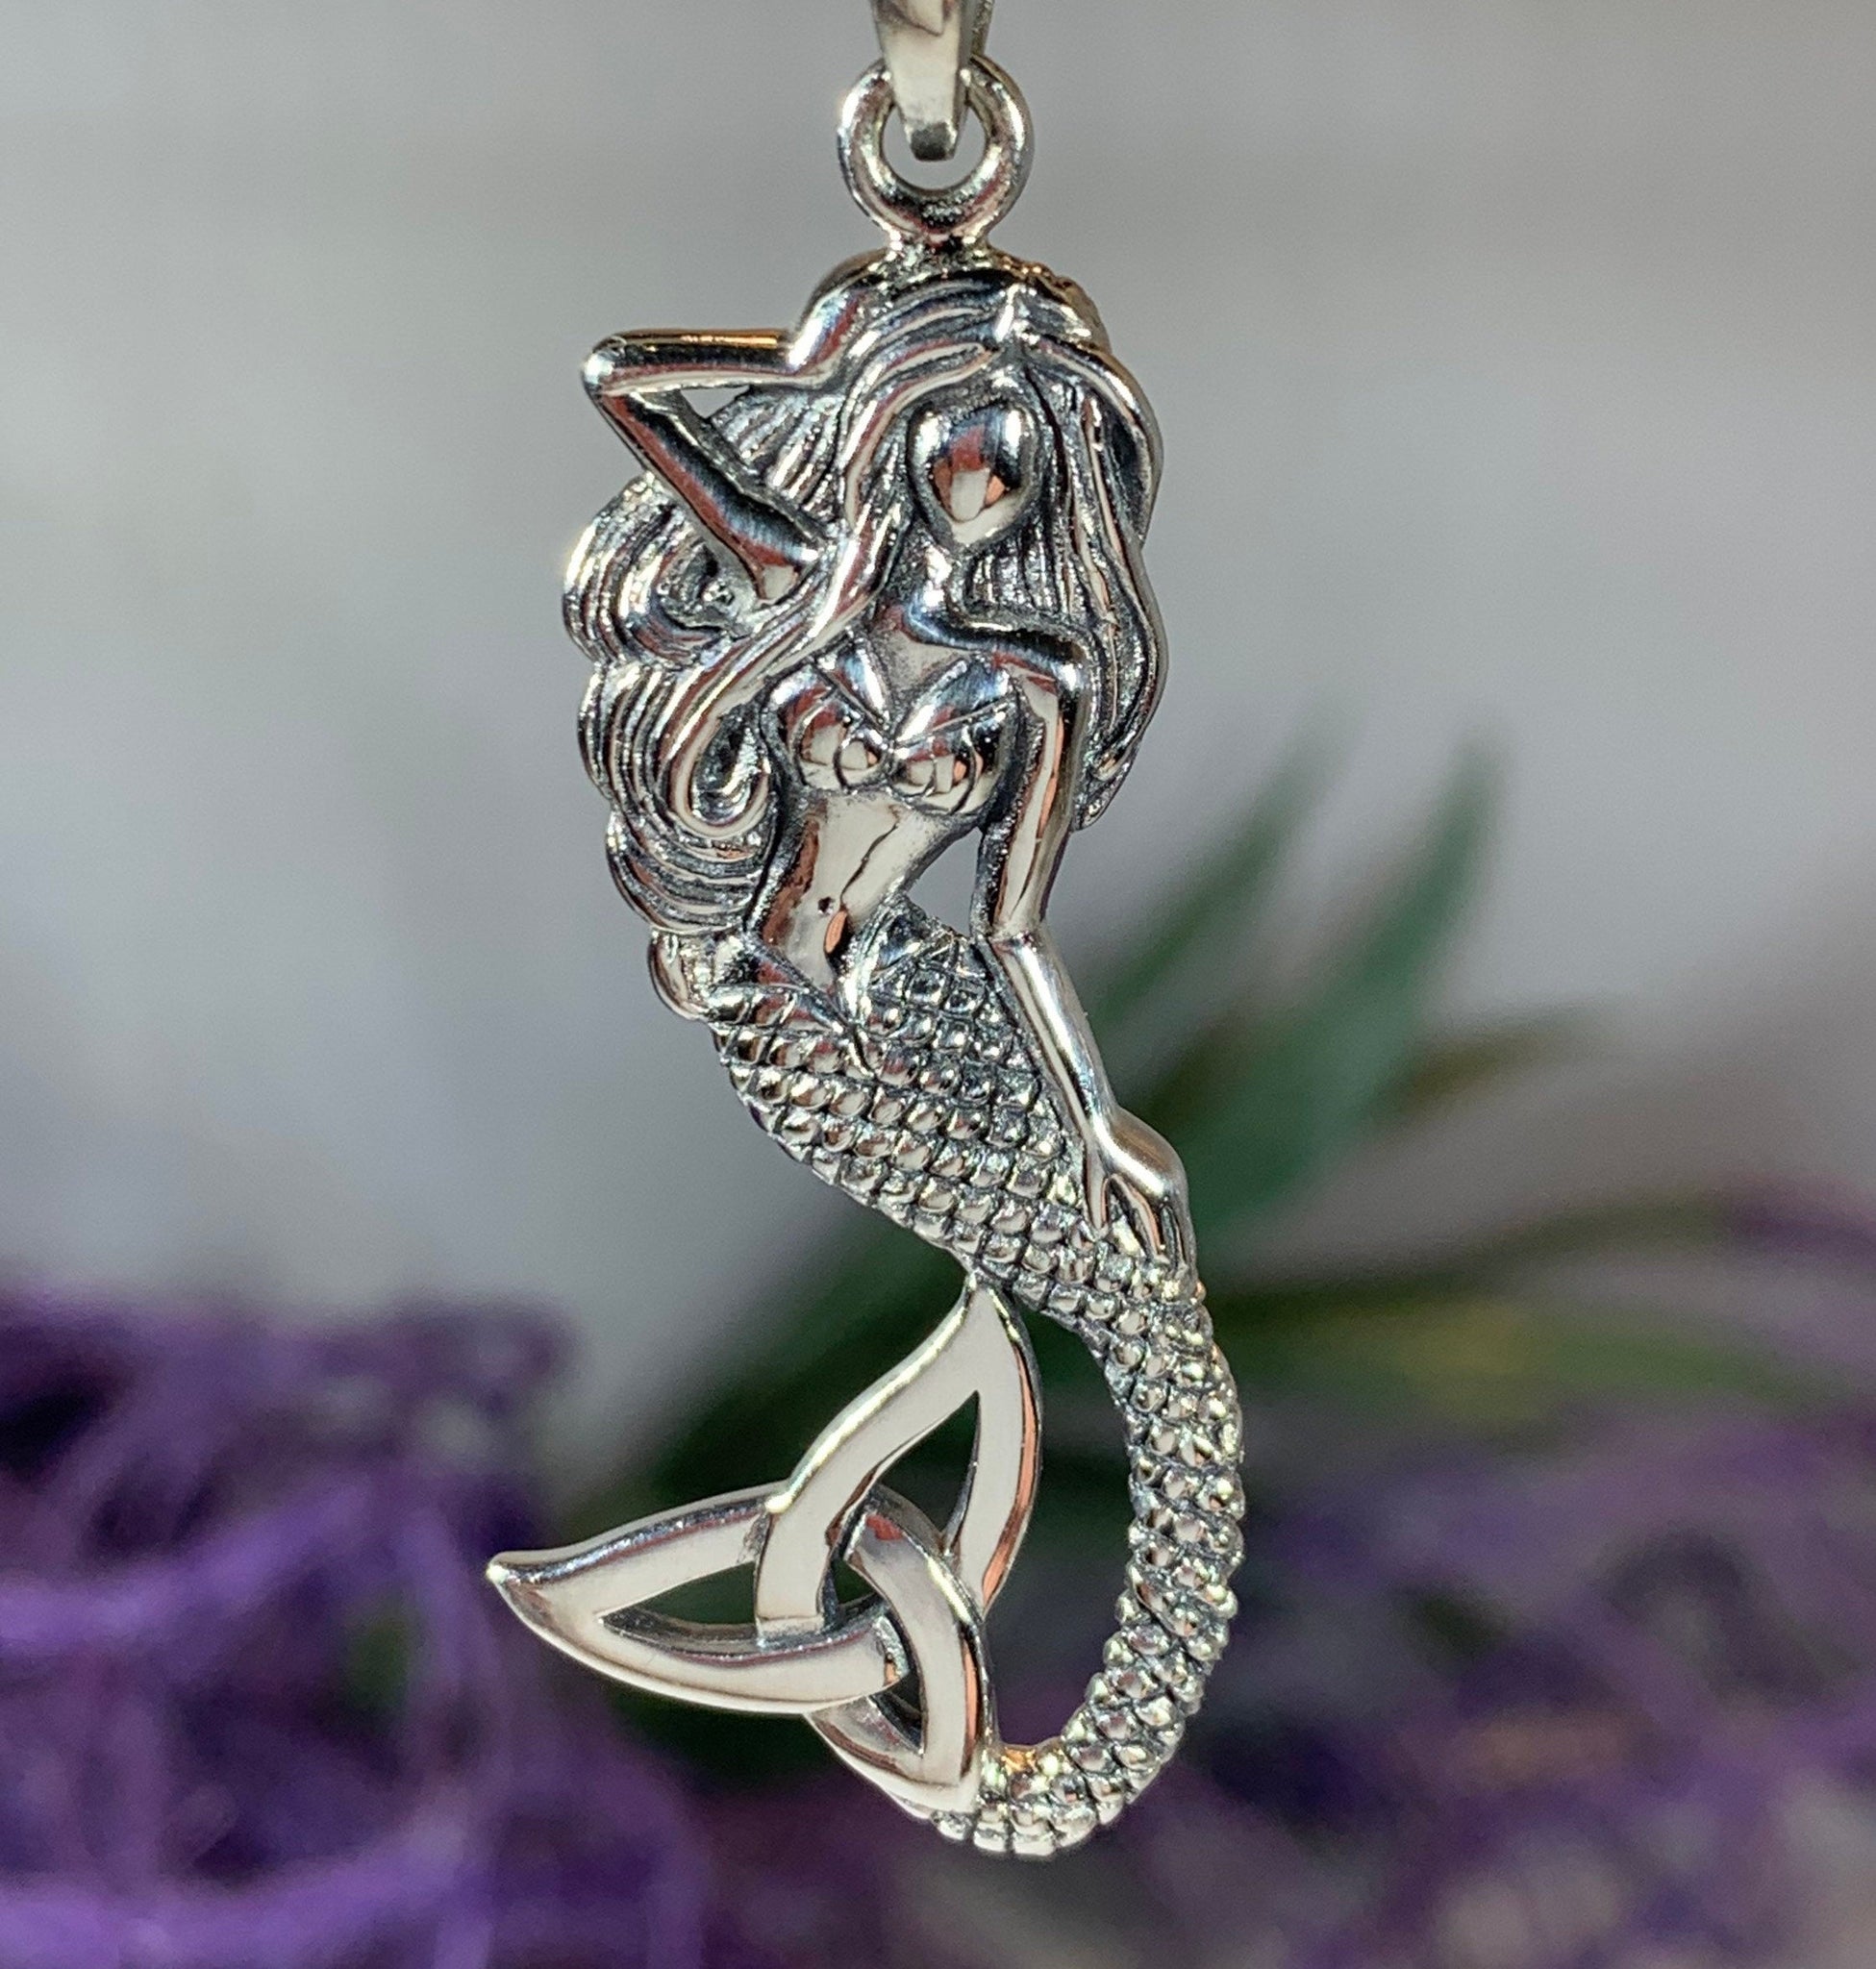 Silver Mini Dreamer's Key Necklace